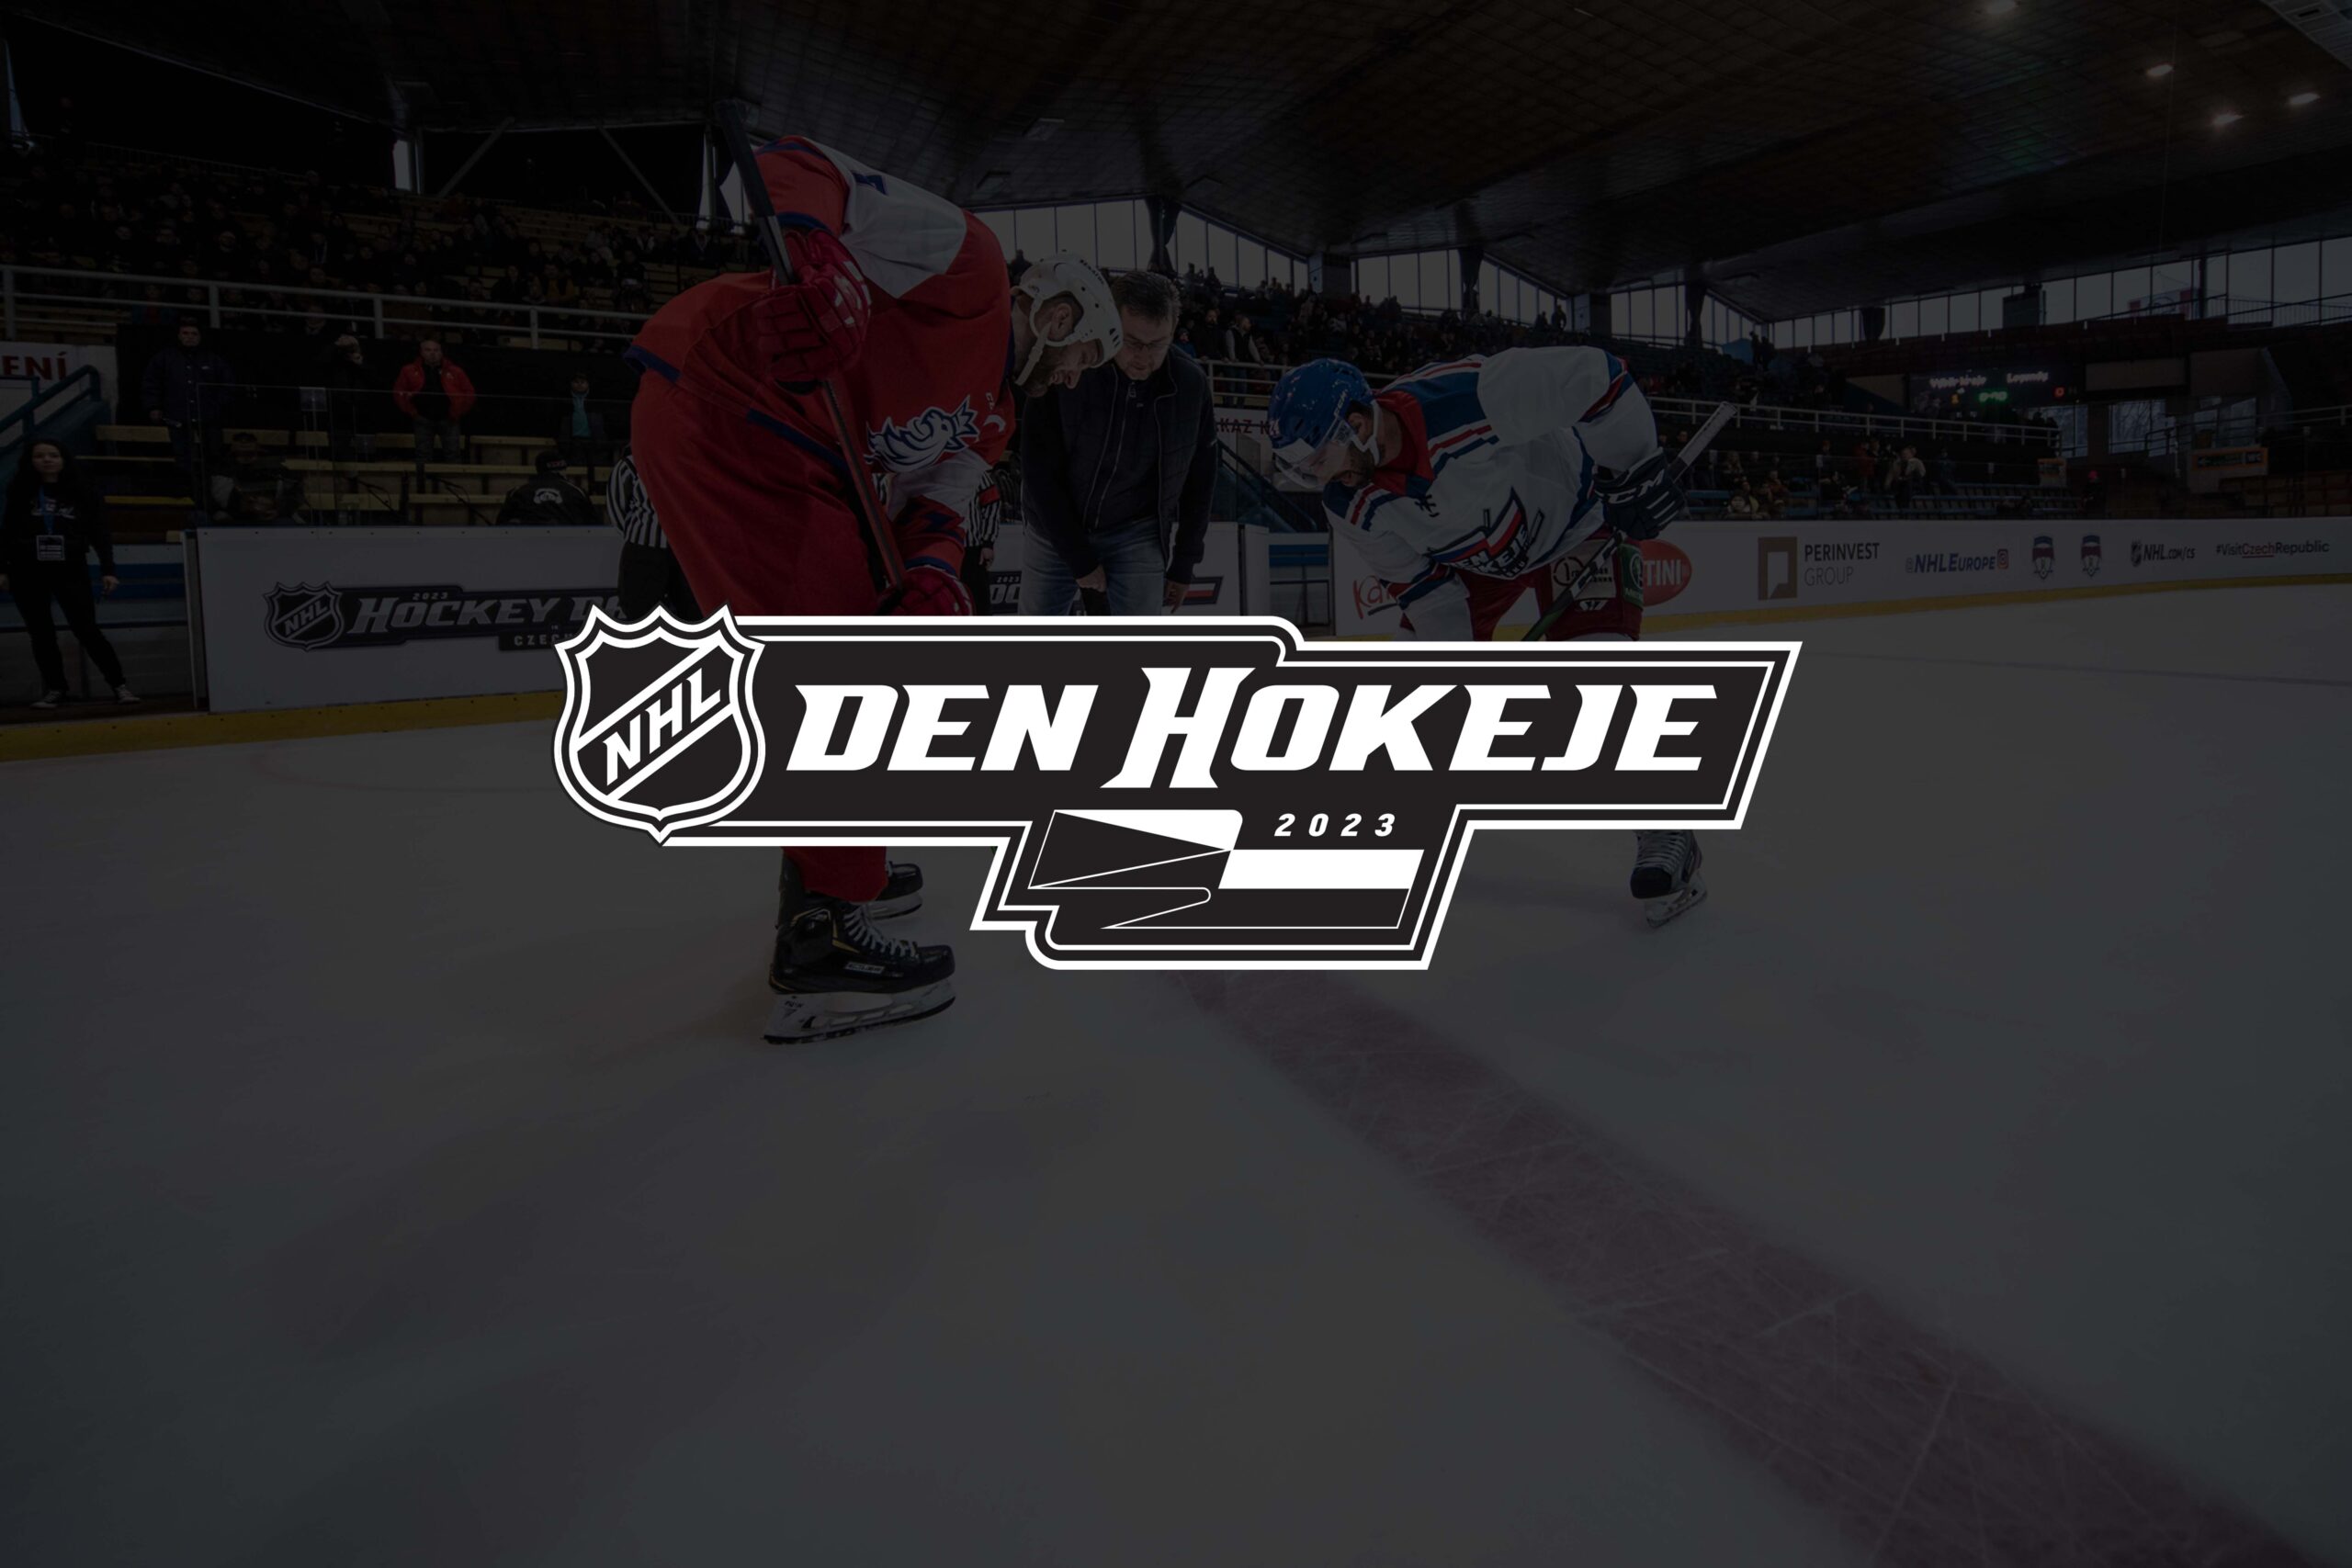 NHL Den hokeje v Česku